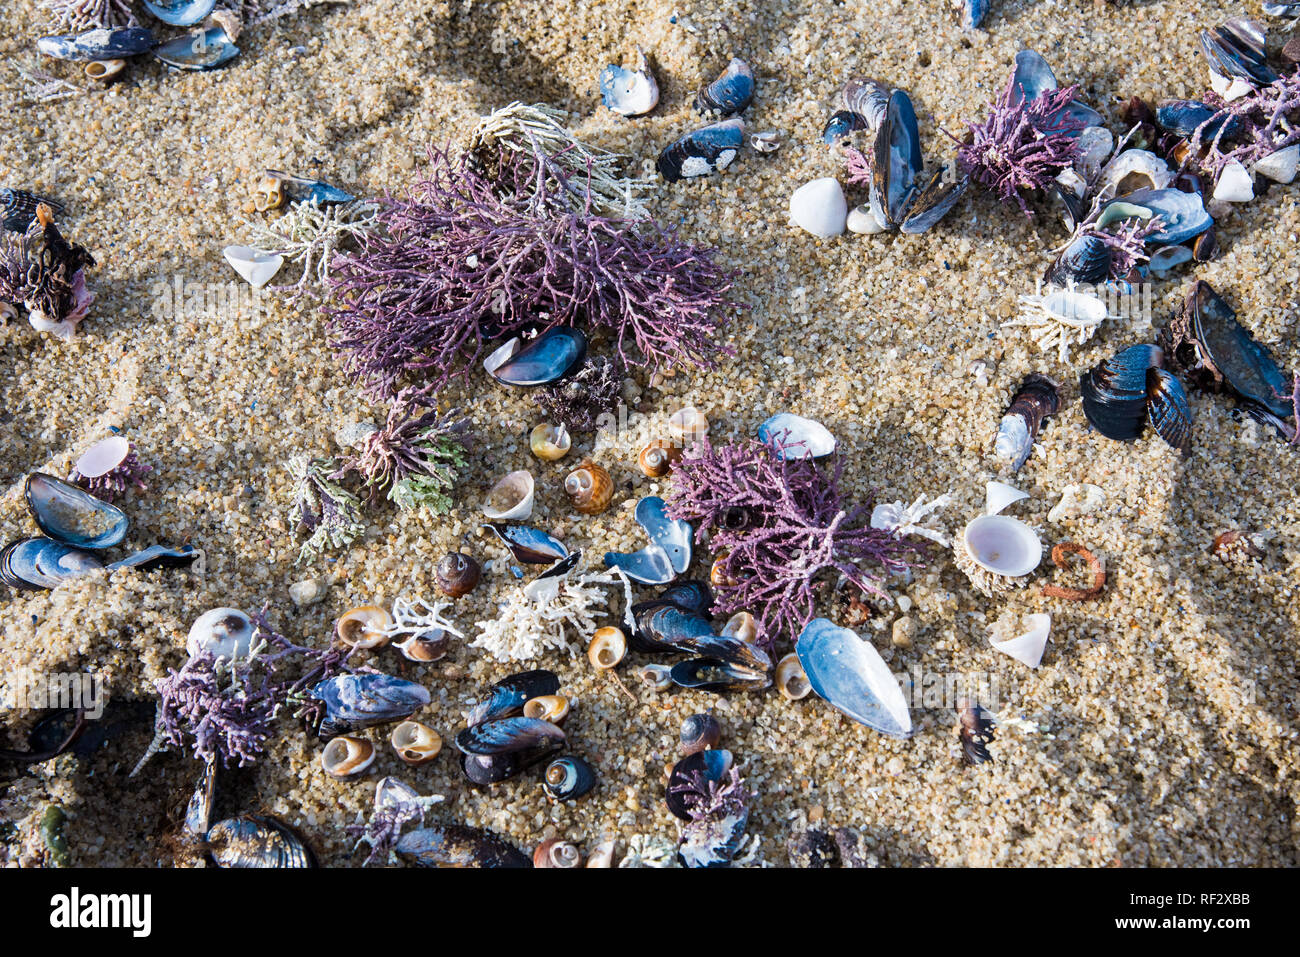 Colorate conchiglie, coralli e creature del mare sulla spiaggia. I disegni e i colori cambiano con ogni in arrivo e in uscita marea. Foto Stock